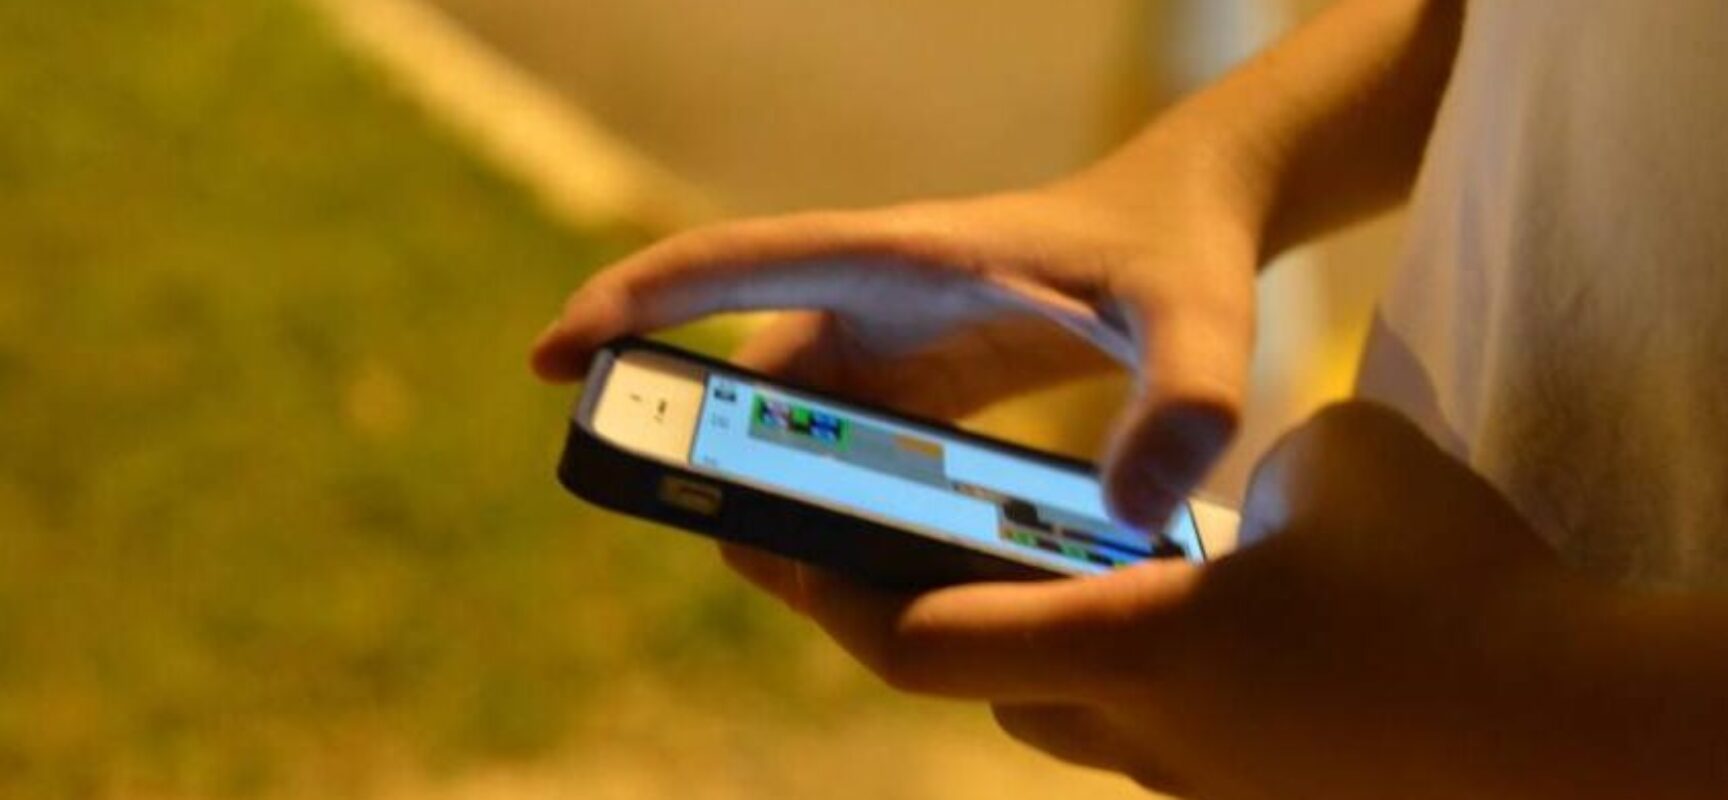 Mais de 3 mil celulares foram furtados durante o carnaval em SP